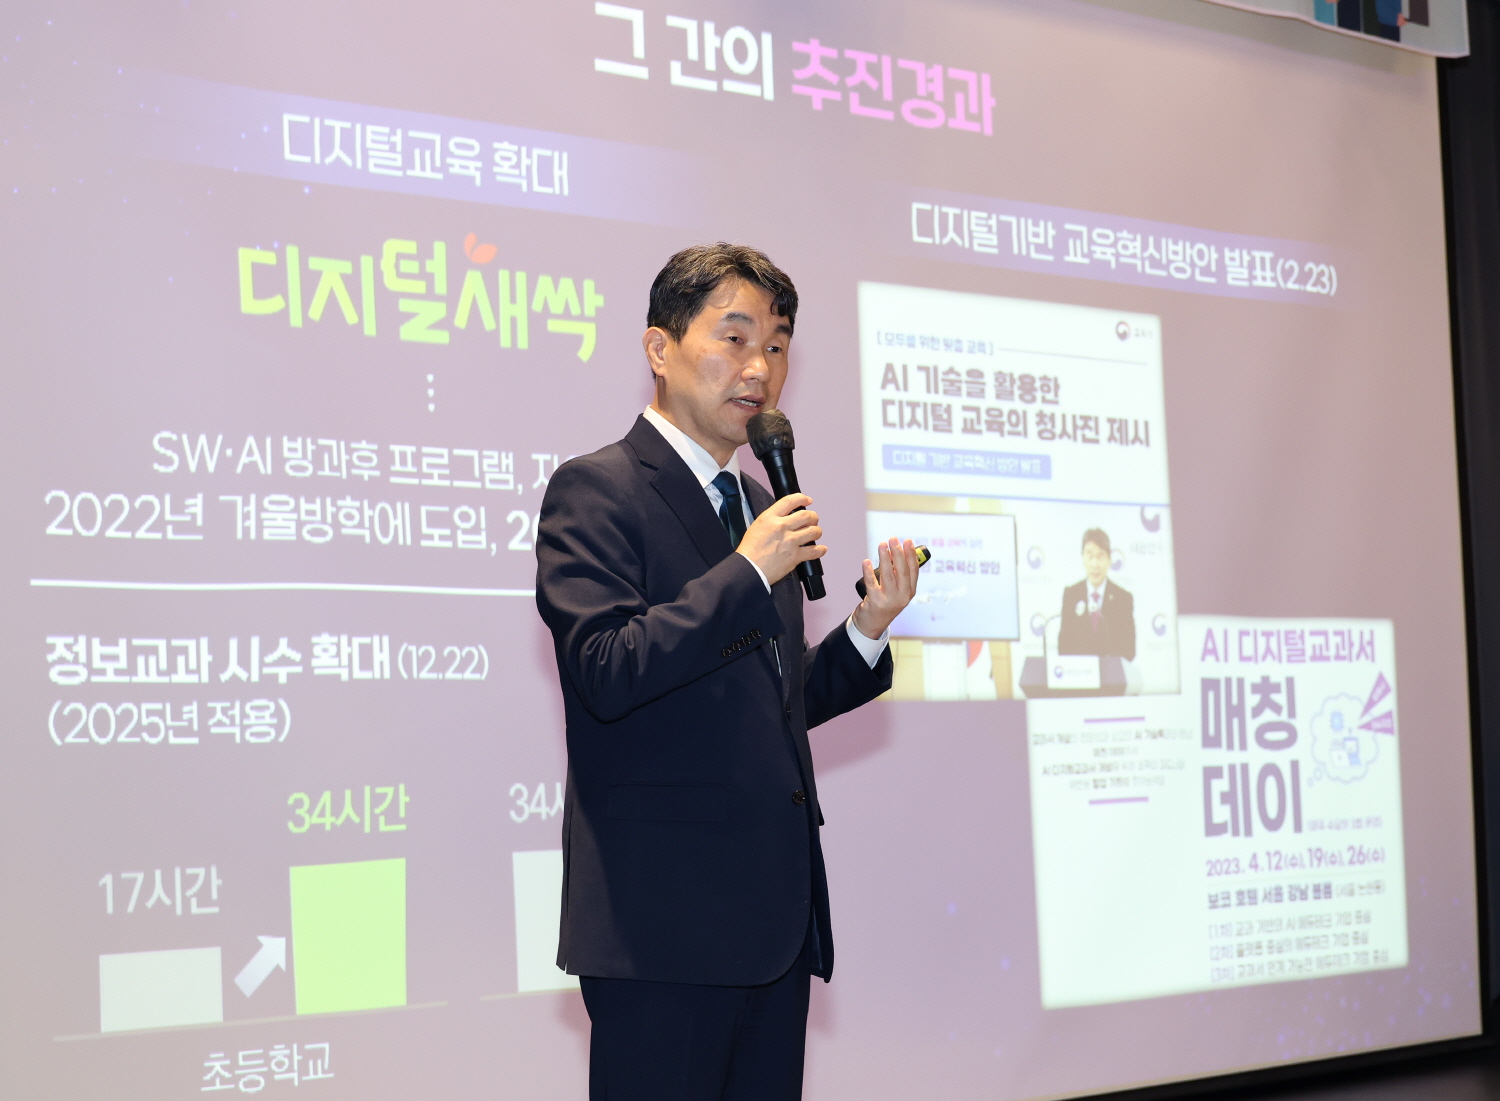 교육부는 5월 22일(월), 경기도 광명시 테이크호텔에서 현장교원 100명과 학교수업 혁신을 위한 소통의 자리를 마련했다.